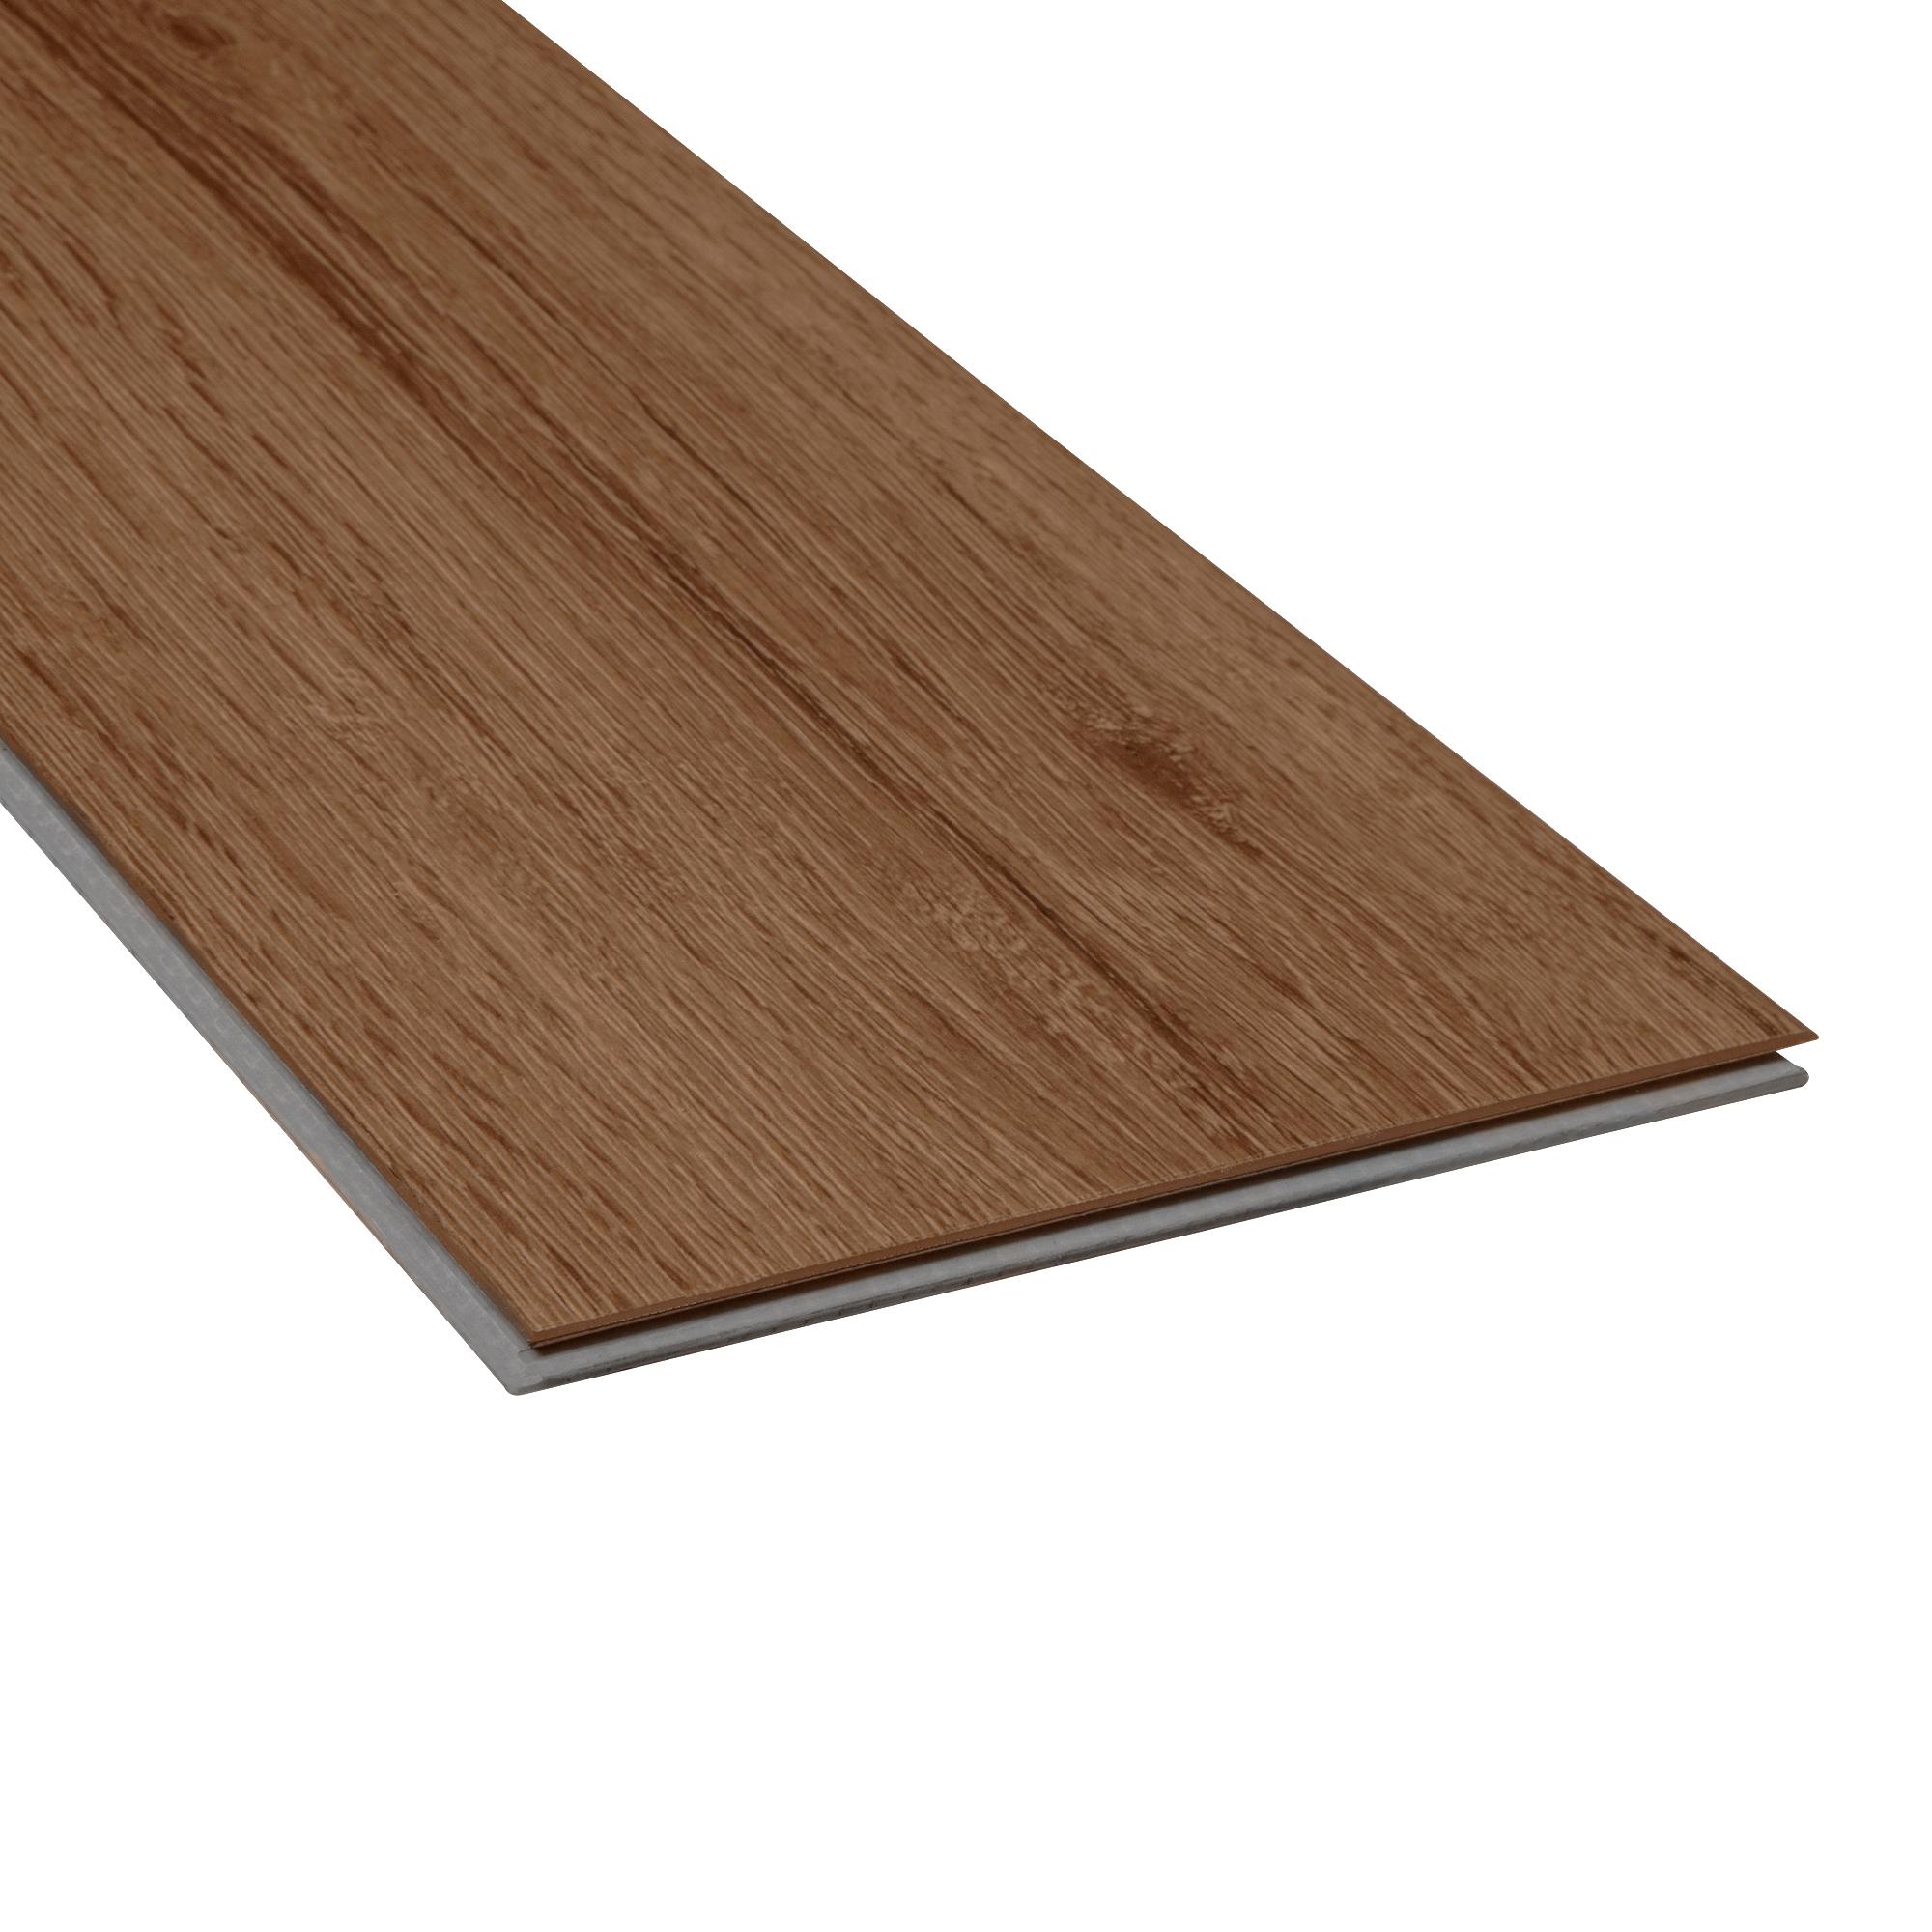 Mohawk 7.75x52 Waterproof Vinyl Plank Flooring in Warm Golden Oak 4.2 mm  (26.91-sqft)/Carton) 